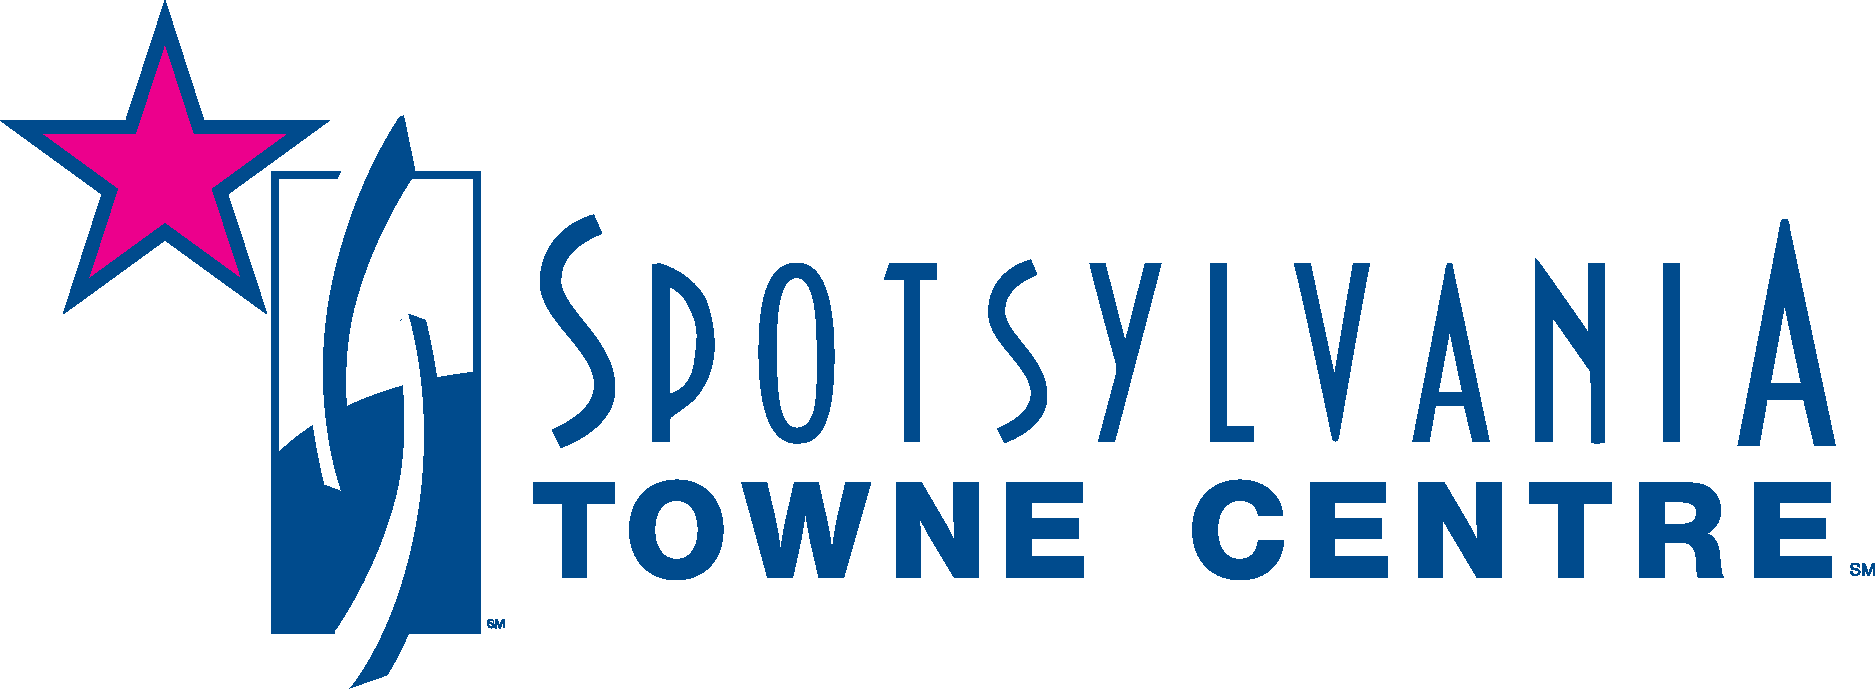 Spotsylvania Towne Centre Logo Vector